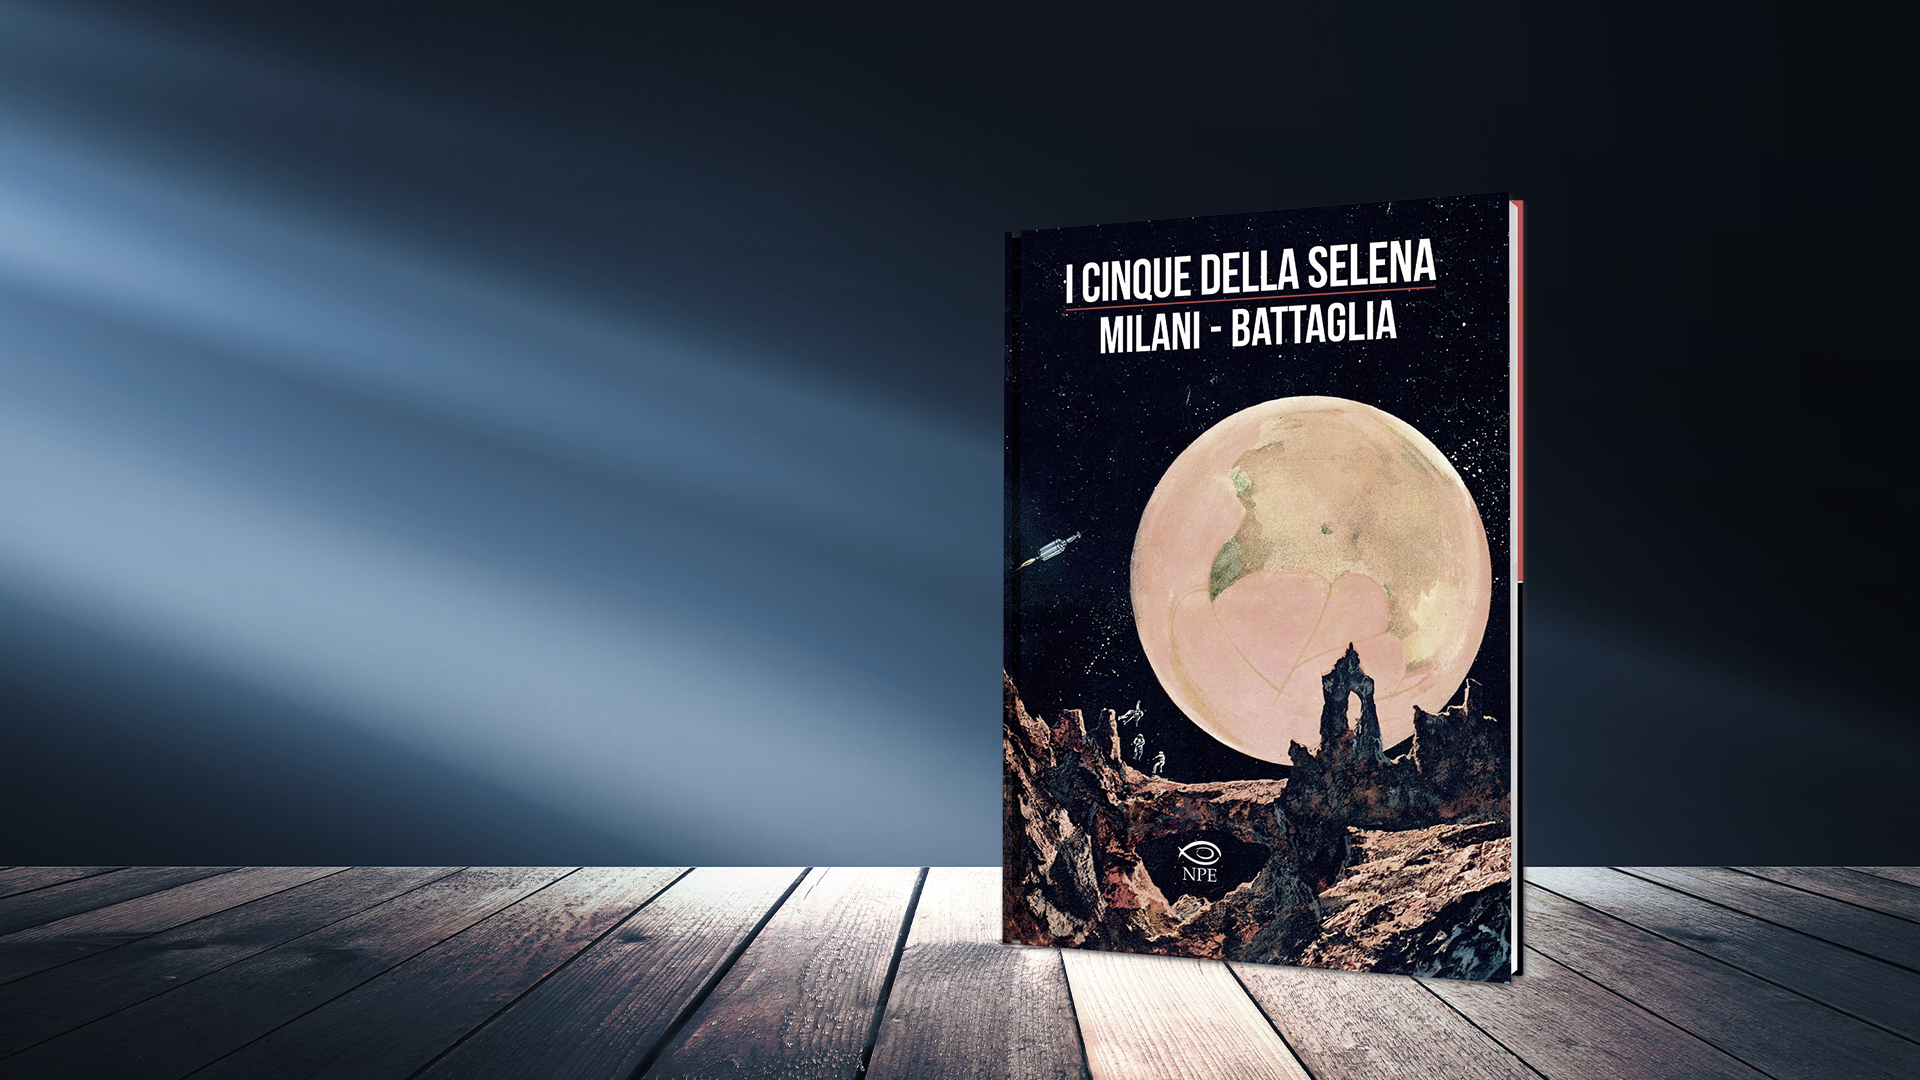 I cinque della Selena dal 21 luglio la nuova uscita Battaglia/Milani